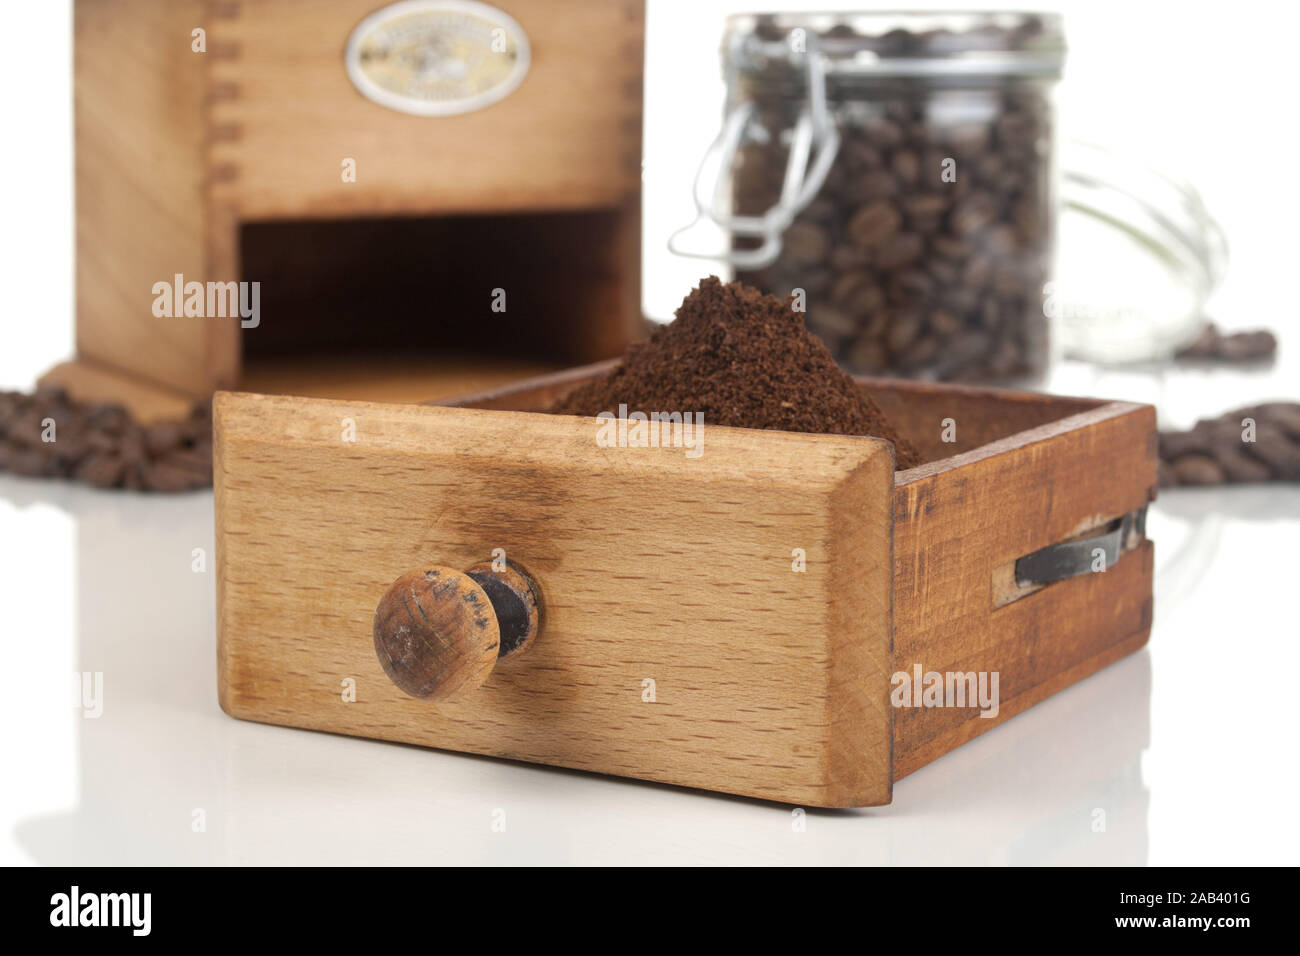 Frisch gemahlener Kaffee mit Kaffeebohnen und Kaffeemuehle |caffè appena macinato con i chicchi di caffè e caffè macinacaffè| Foto Stock